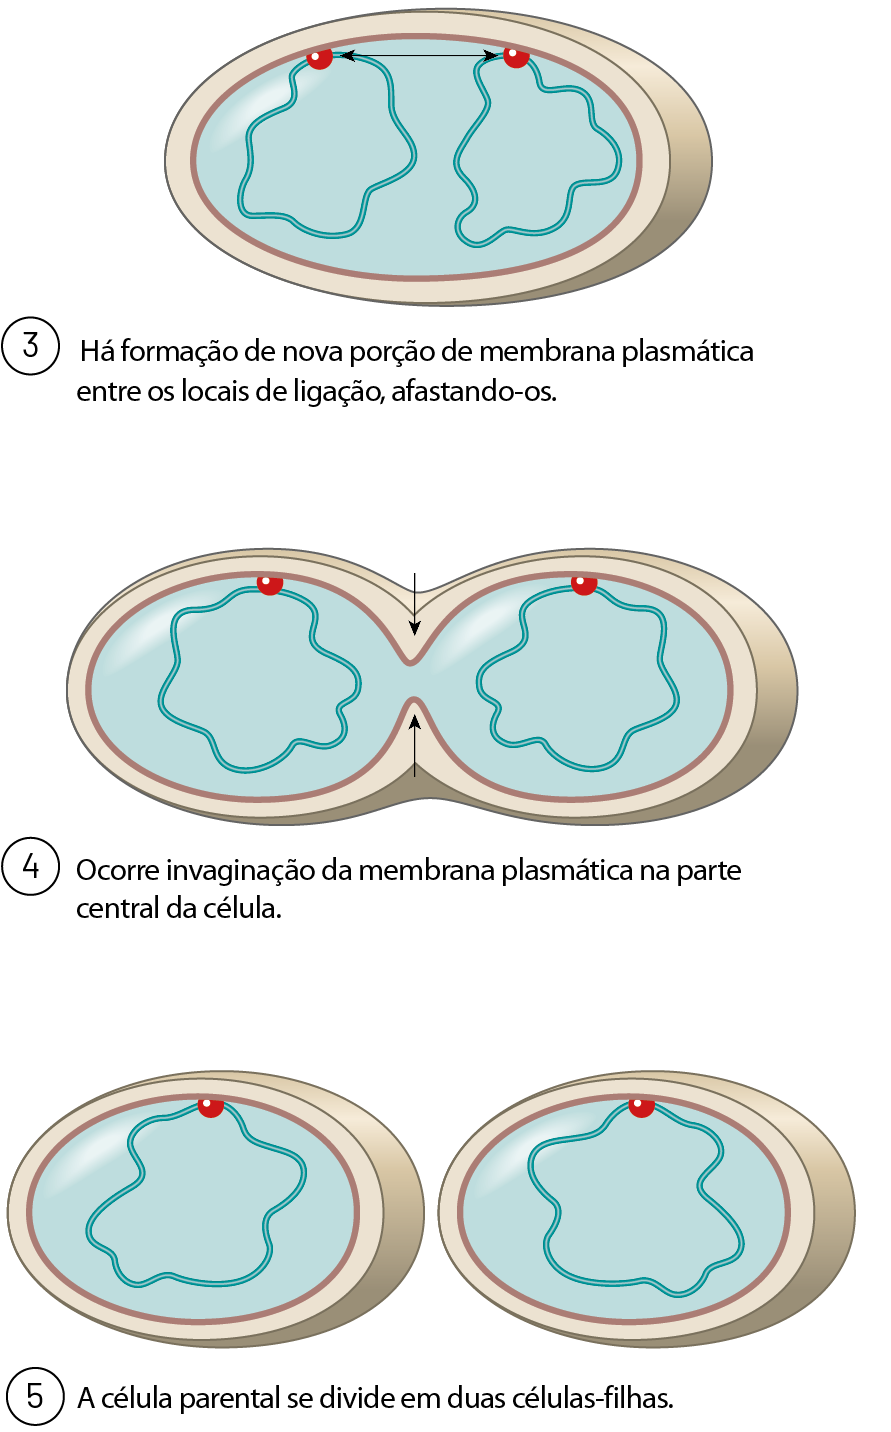 3. Há formação de nova porção de membrana plasmática entre os locais de ligação, afastando-os. Estrutura oval. Em seu interior, duas linhas circulares irregulares, com duas bolinhas vermelhas que encostam na camada vermelha da forma ovalada. Há uma seta dupla entre as bolinhas, apontando para elas. 4. Ocorre invaginação da membrana plasmática na parte central da célula. Duas estruturas ovais, juntas, lado a lado. O interior dessas duas estruturas está fundido. Há duas setas verticais, uma apontando para baixo e outra apontando para cima, na região em que elas estão  unidas. No interior de cada uma delas, uma linha circular irregular, com uma bolinha vermelha que encosta na camada vermelha da forma ovalada.  5. A célula parental se divide em duas células-filhas. Duas estruturas ovaladas separadas. No interior de cada uma delas, uma linha circular irregular, com uma bolinha vermelha que encosta na camada vermelha da forma ovalada.